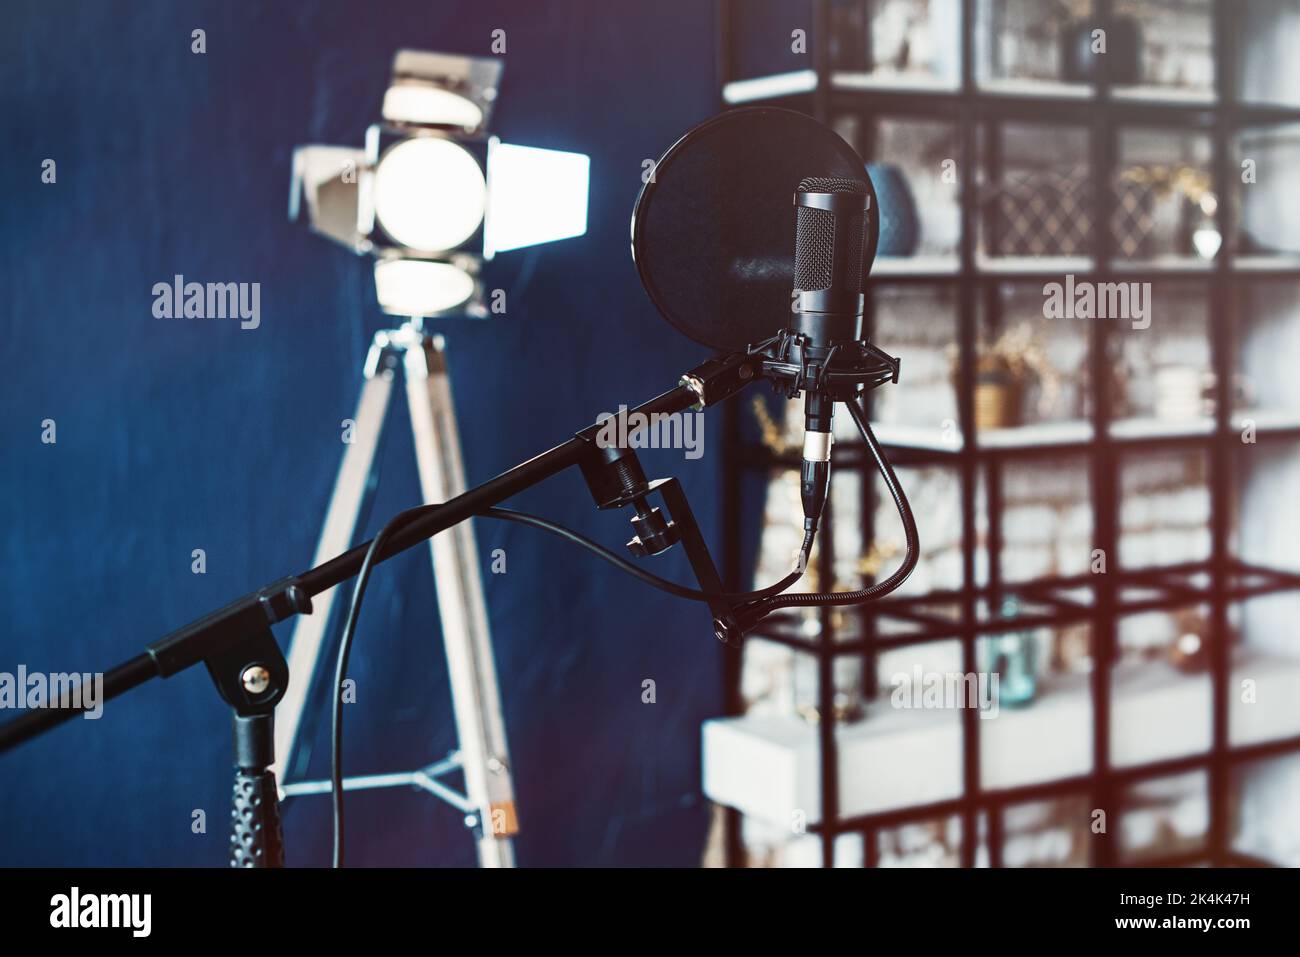 Microphone condensateur studio avec filtre pop et support anti-vibration pour l'enregistrement en direct. Mur bleu et lumière décorative sur fond Banque D'Images